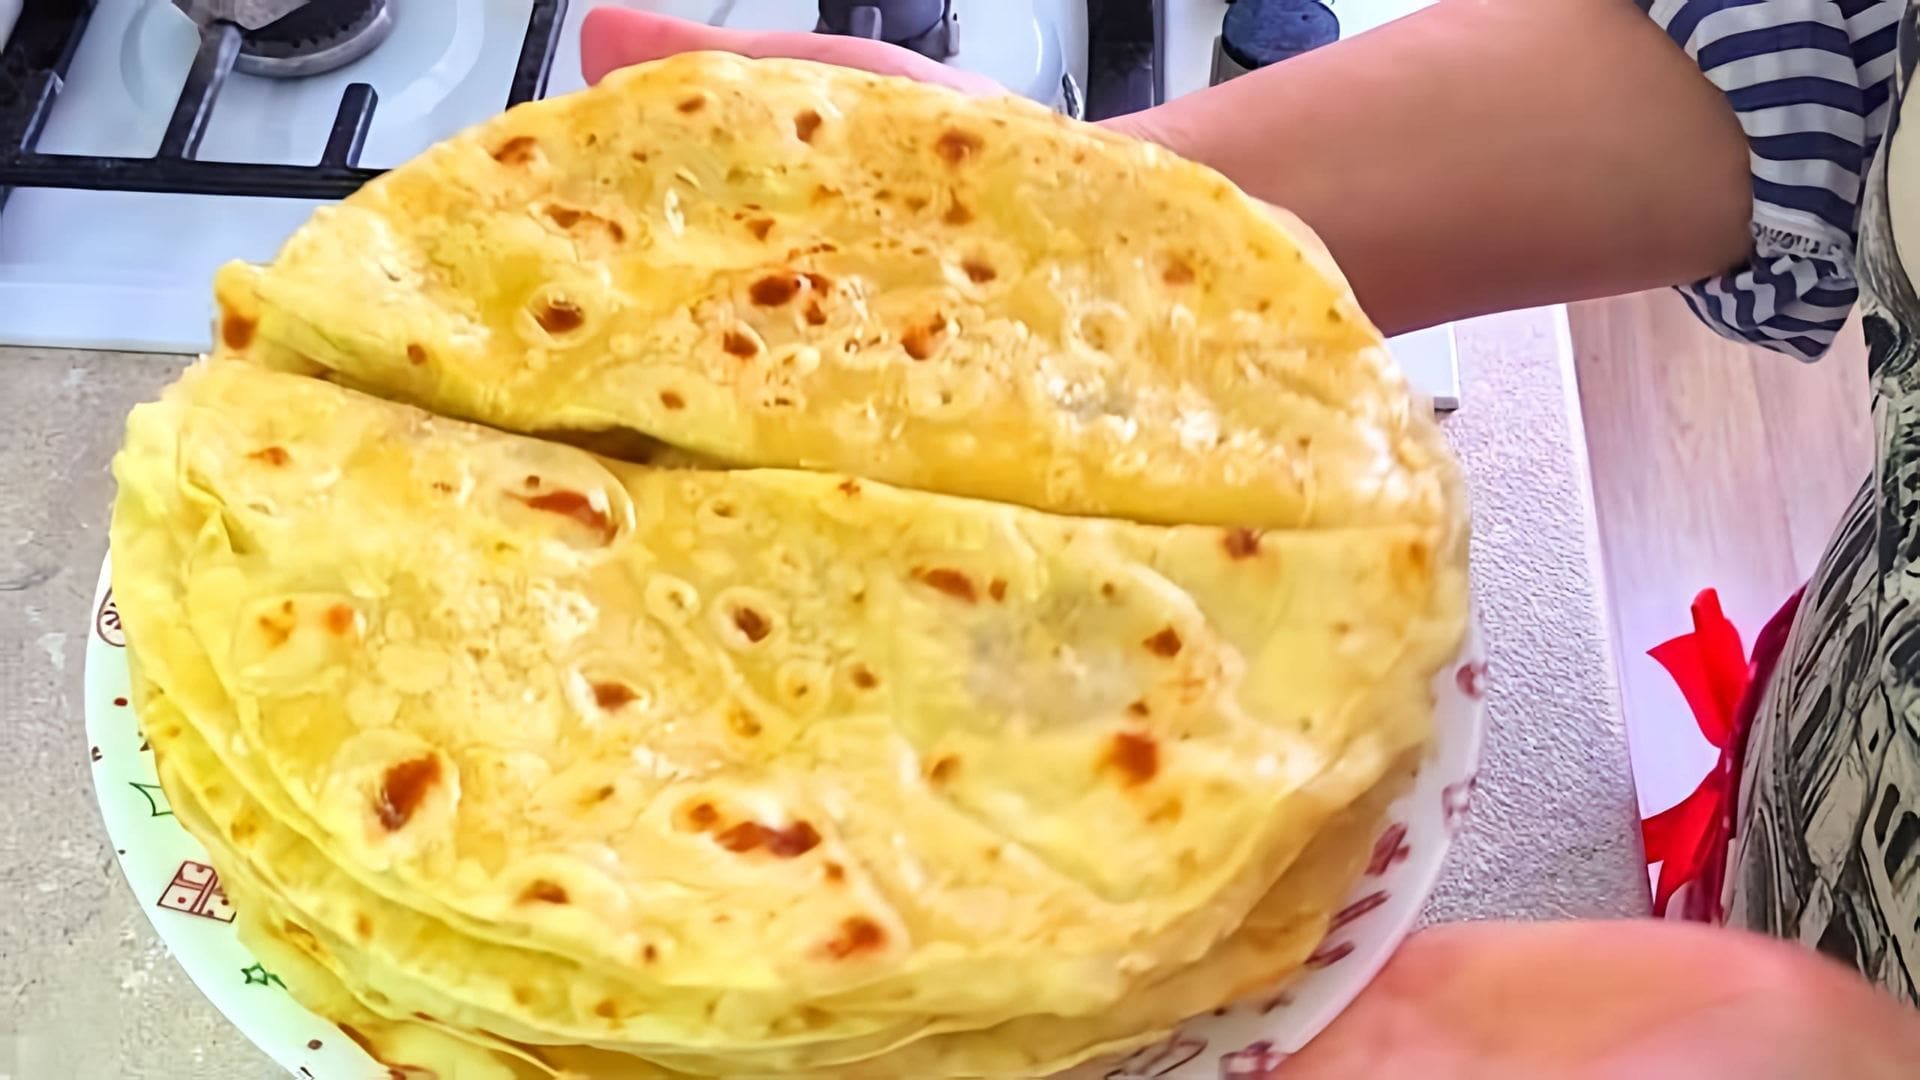 В этом видео демонстрируется процесс приготовления татарского национального блюда "Кыстыбый" с картофелем